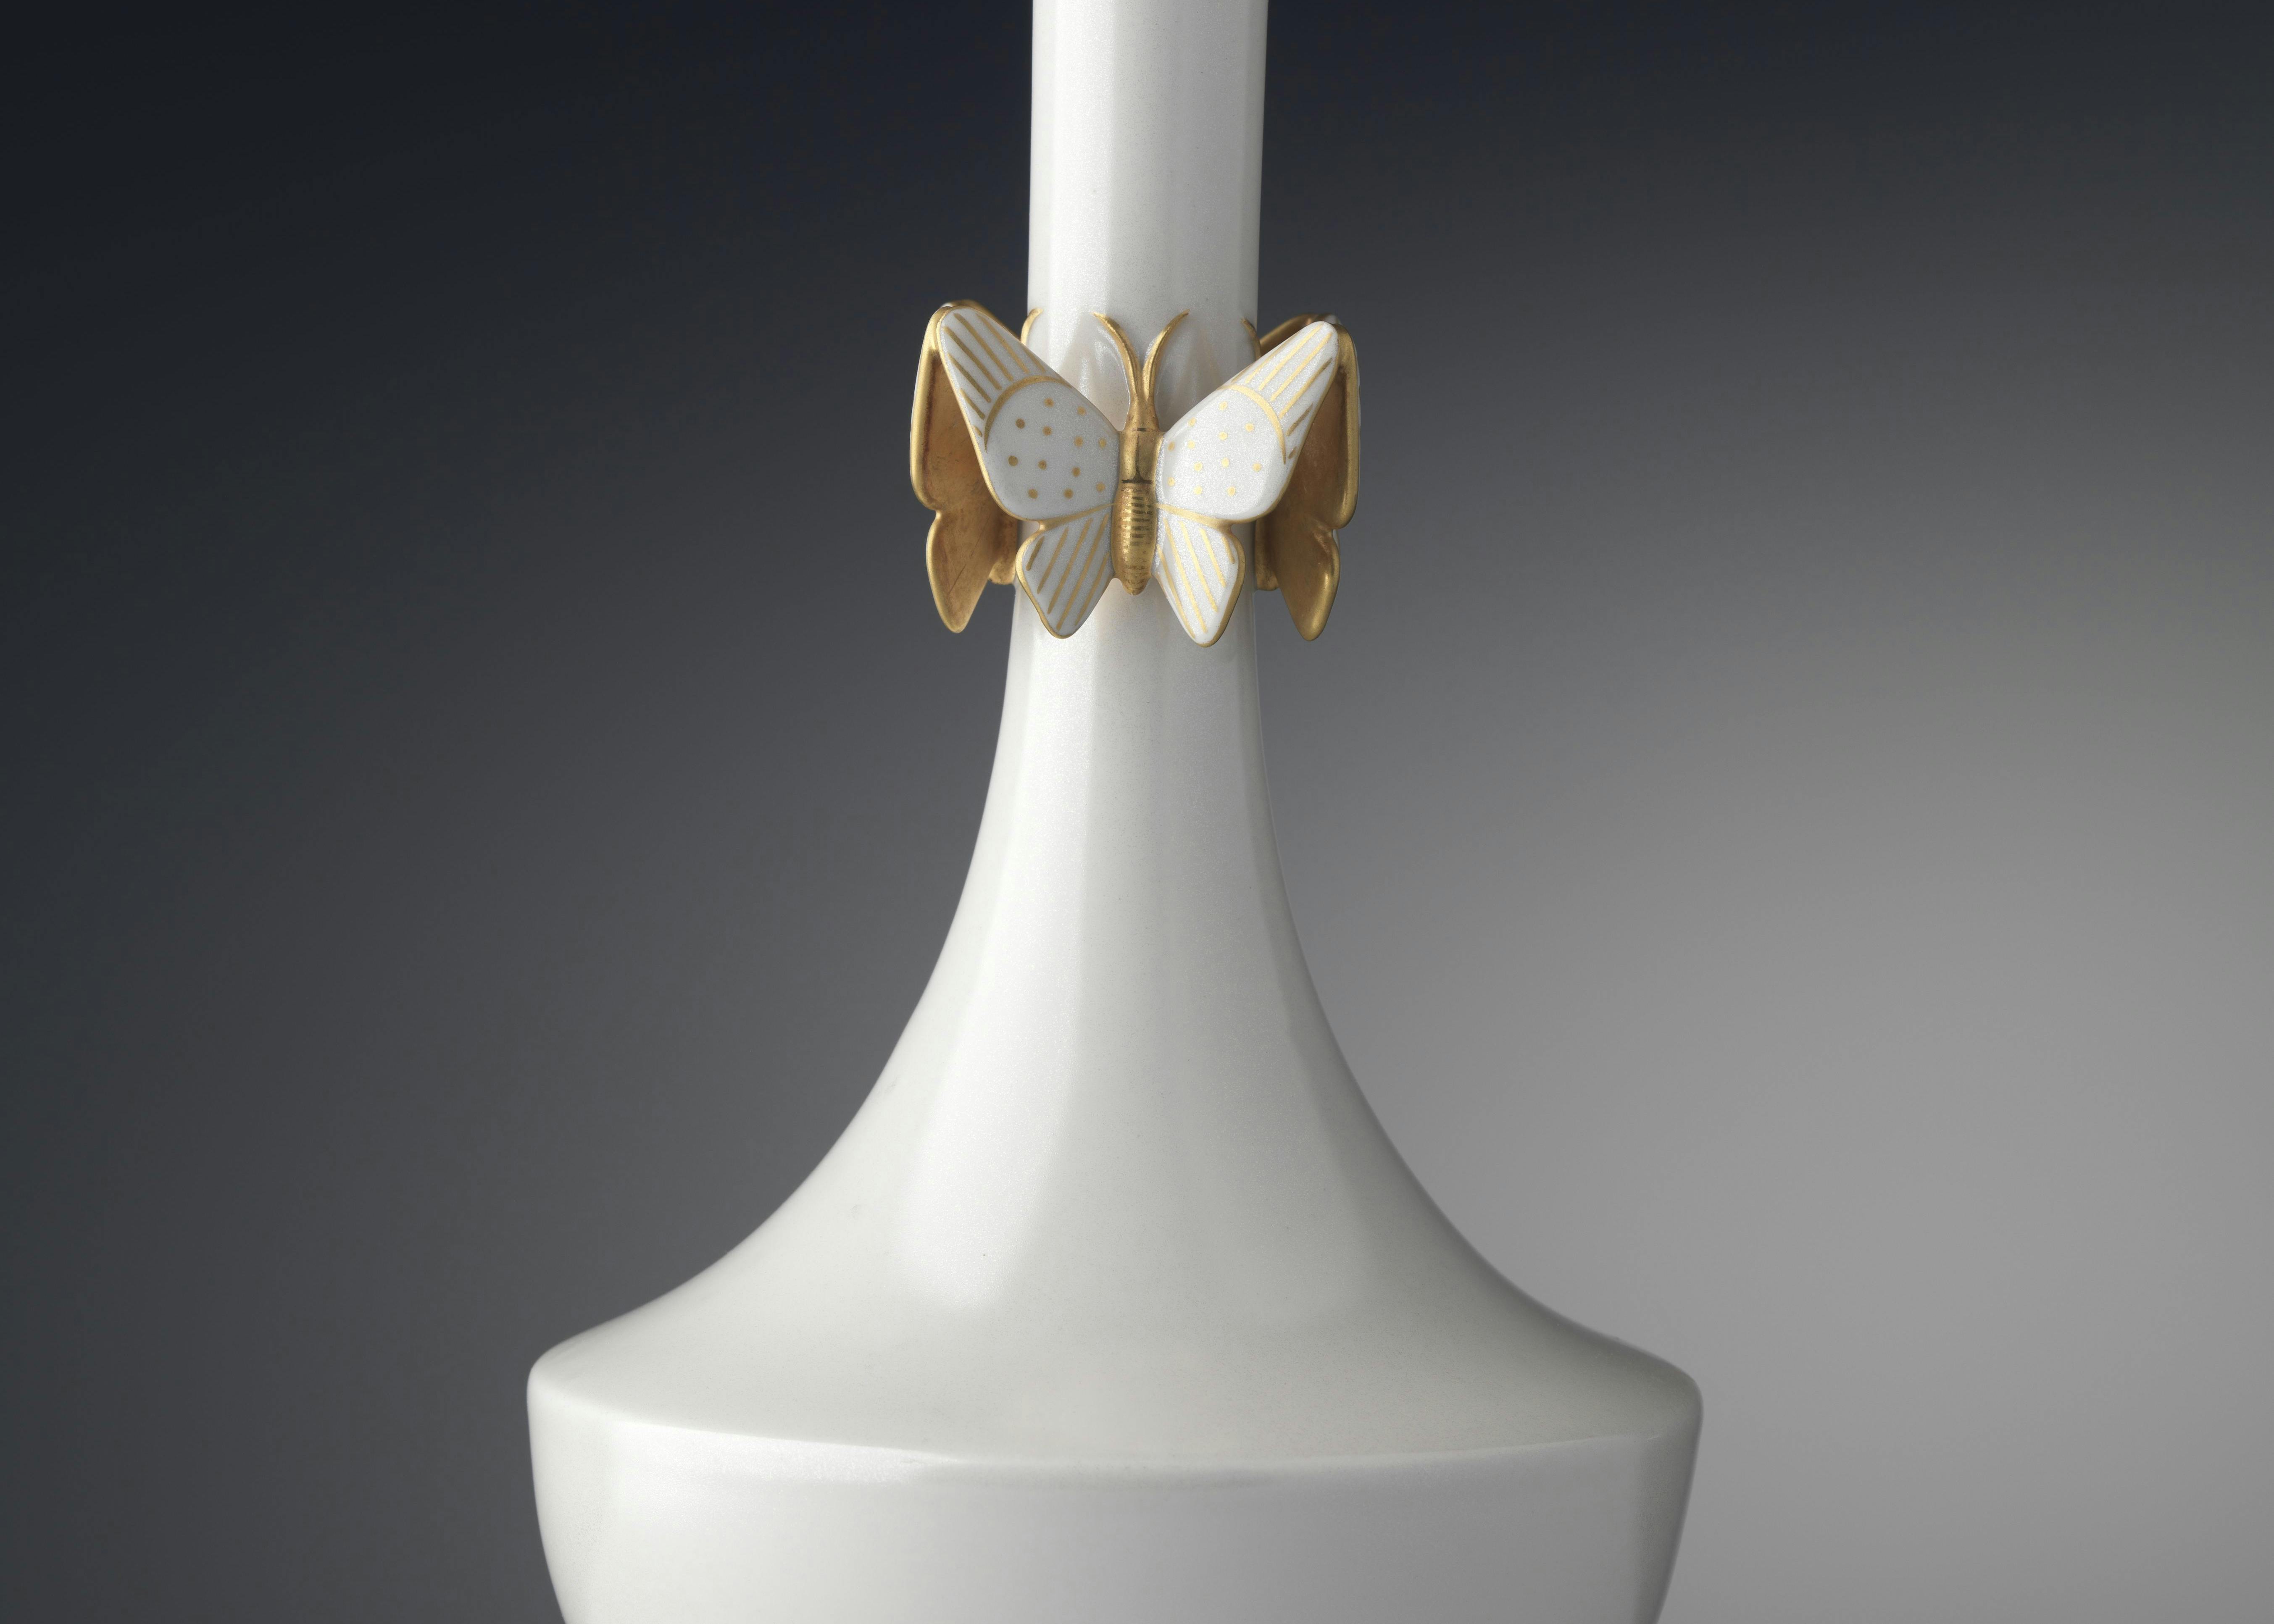 Vaso bianco con farfalle appoggiate sul lungo collo